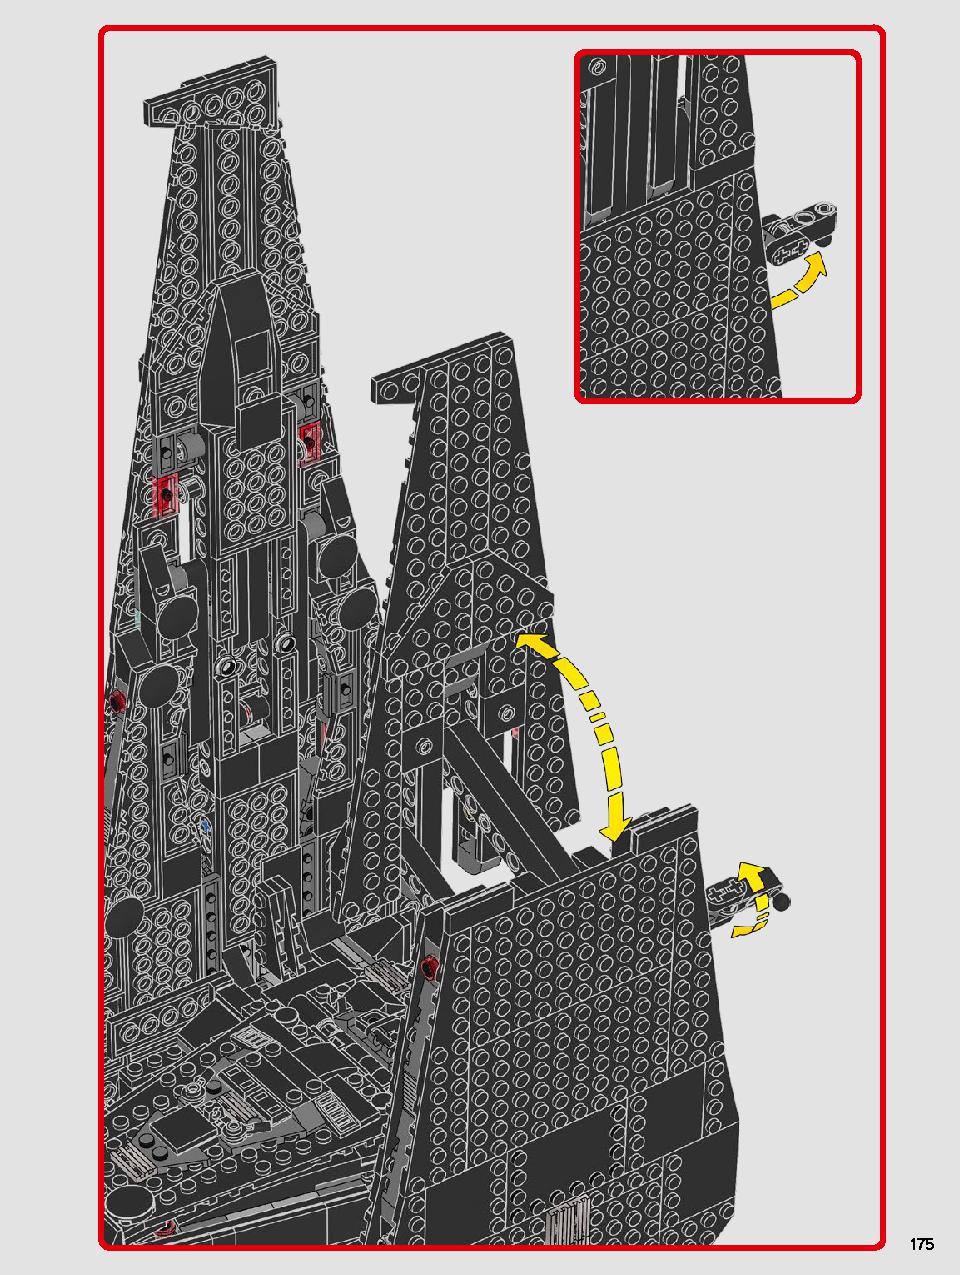 스타워즈 카일로 렌의 셔틀™ 75256 레고 세트 제품정보 레고 조립설명서 175 page